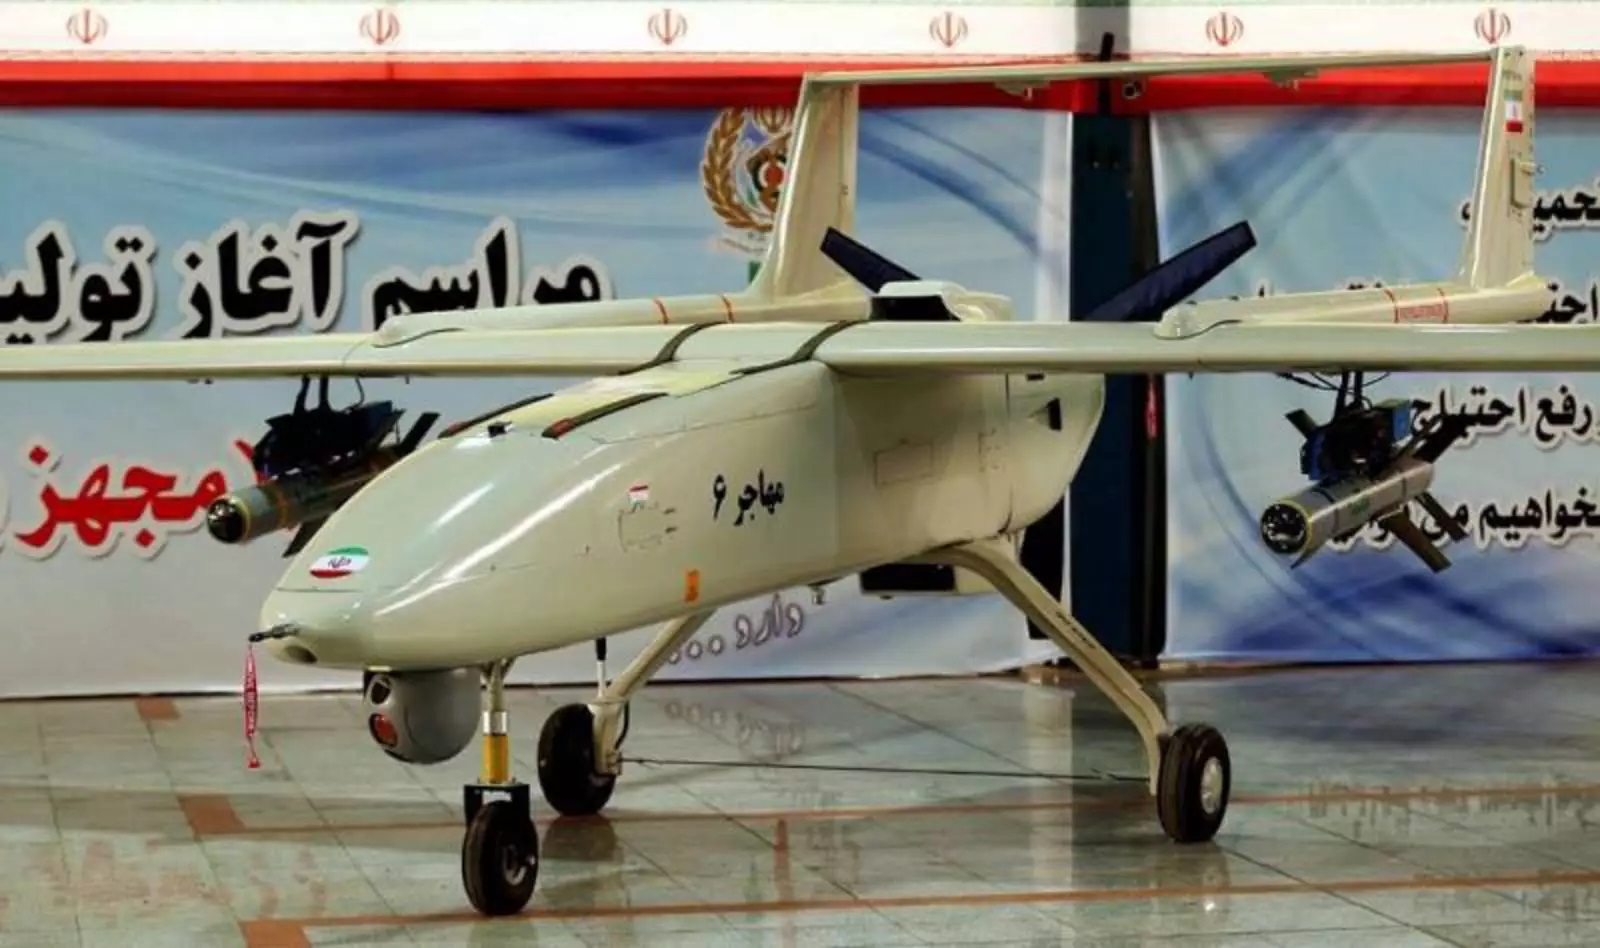 L'Iran potrebbe inviare altri droni kamikaze alla Russia - Segretario di Stato americano